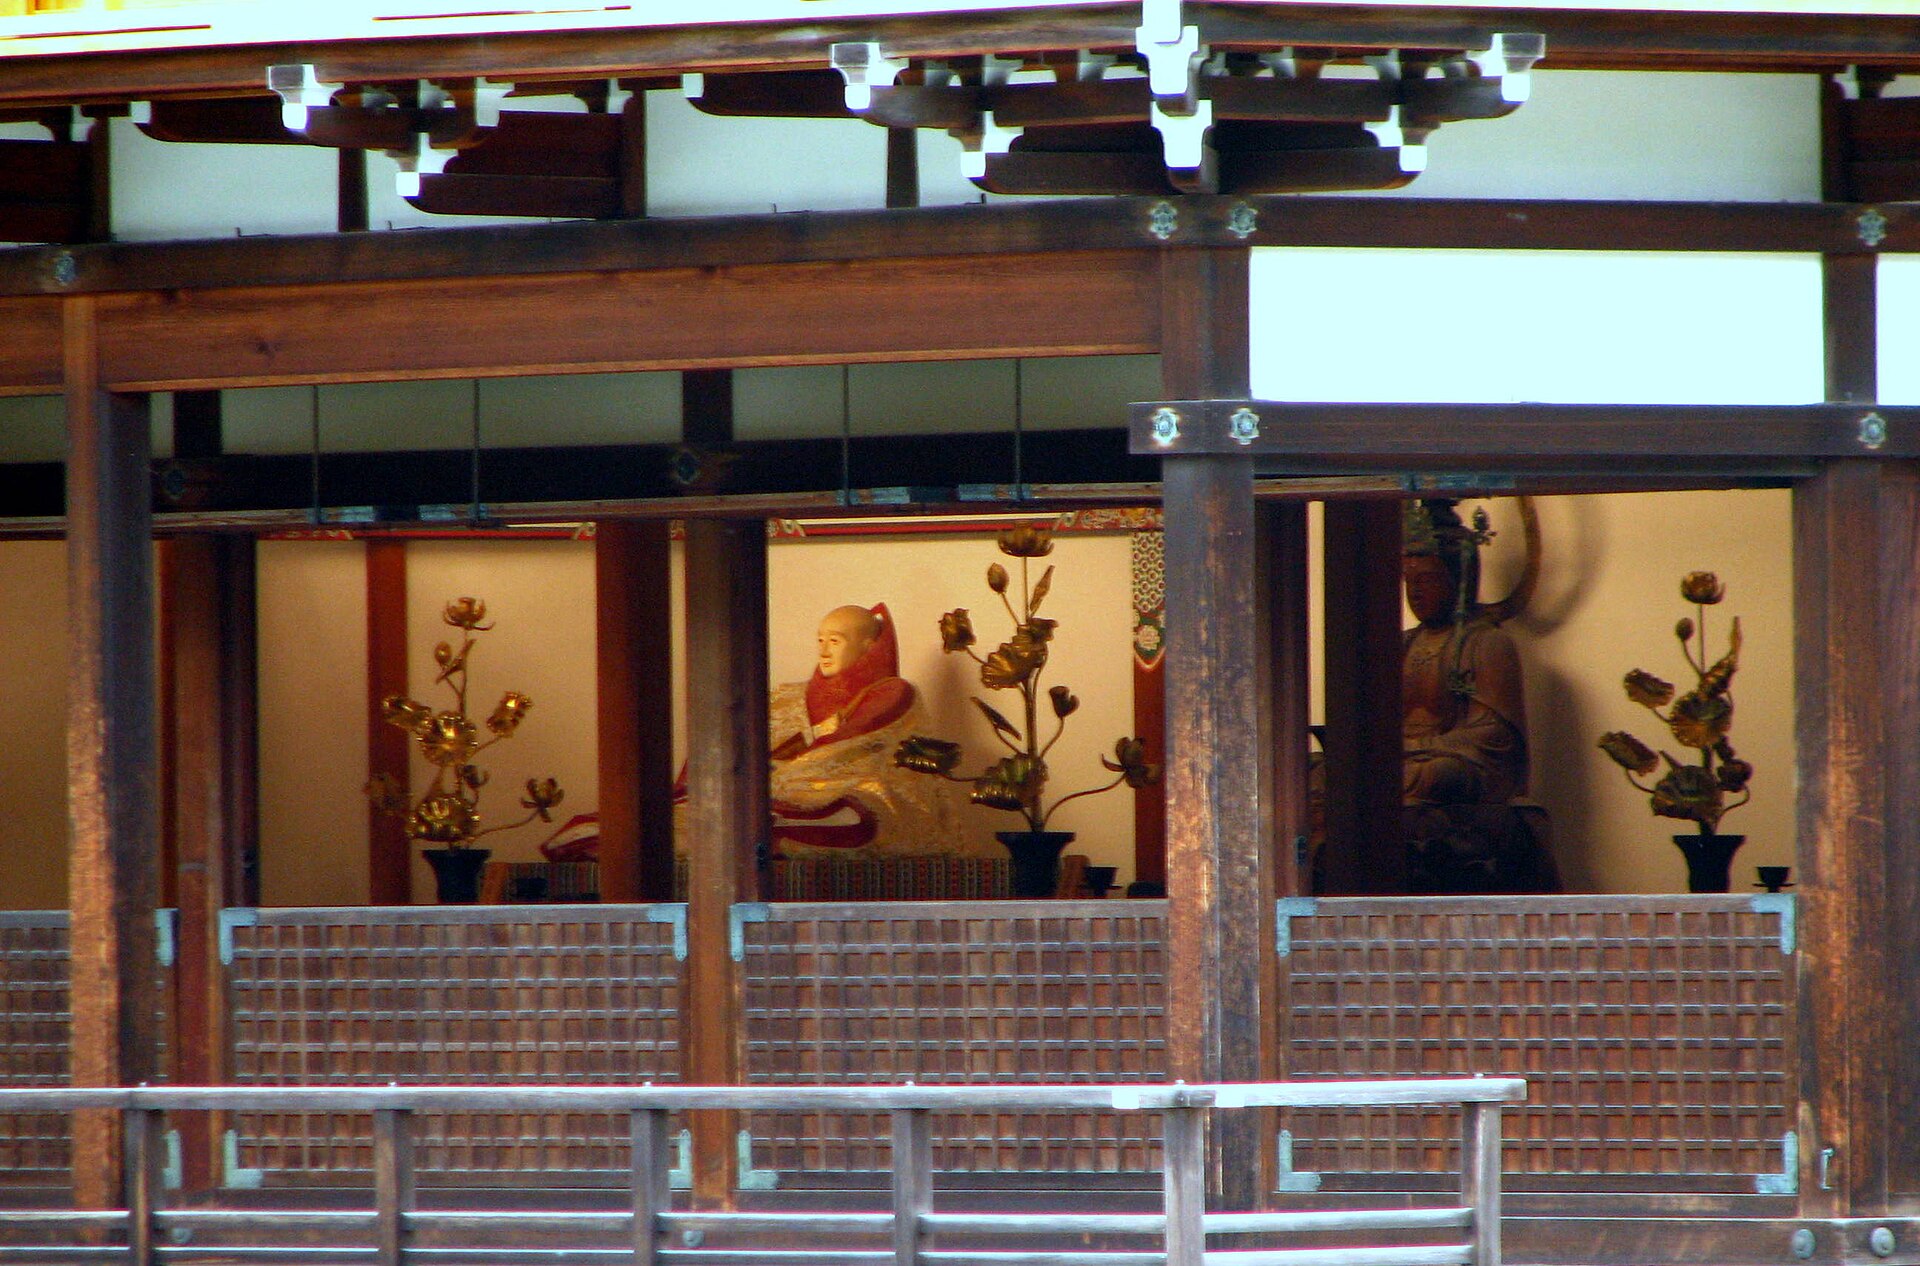 Tầng thứ 2 được xây dựng theo phong cách Bukke thường thấy trong các khu nhà ở của Samurai và bên ngoài được phủ hoàn toàn bằng vàng lá. Ở tầng này có tượng vị Bồ tát Kannon ngồi bao quanh bởi các bức tượng của Tứ đại thiên vương. Tầng trên cùng mang thiết kế của phong cách của thiền viện Trung Quốc, được mạ vàng từ trong ra ngoài. Mái của của chùa Vàng Kyoto có hình kim tự tháp và được bao phủ trong các mảnh gỗ hinoki. Đỉnh mái được trang trí hình phượng hoàng bằng đồng, đây là biểu tượng của sự ưu ái, đức hạnh và hài hòa. 